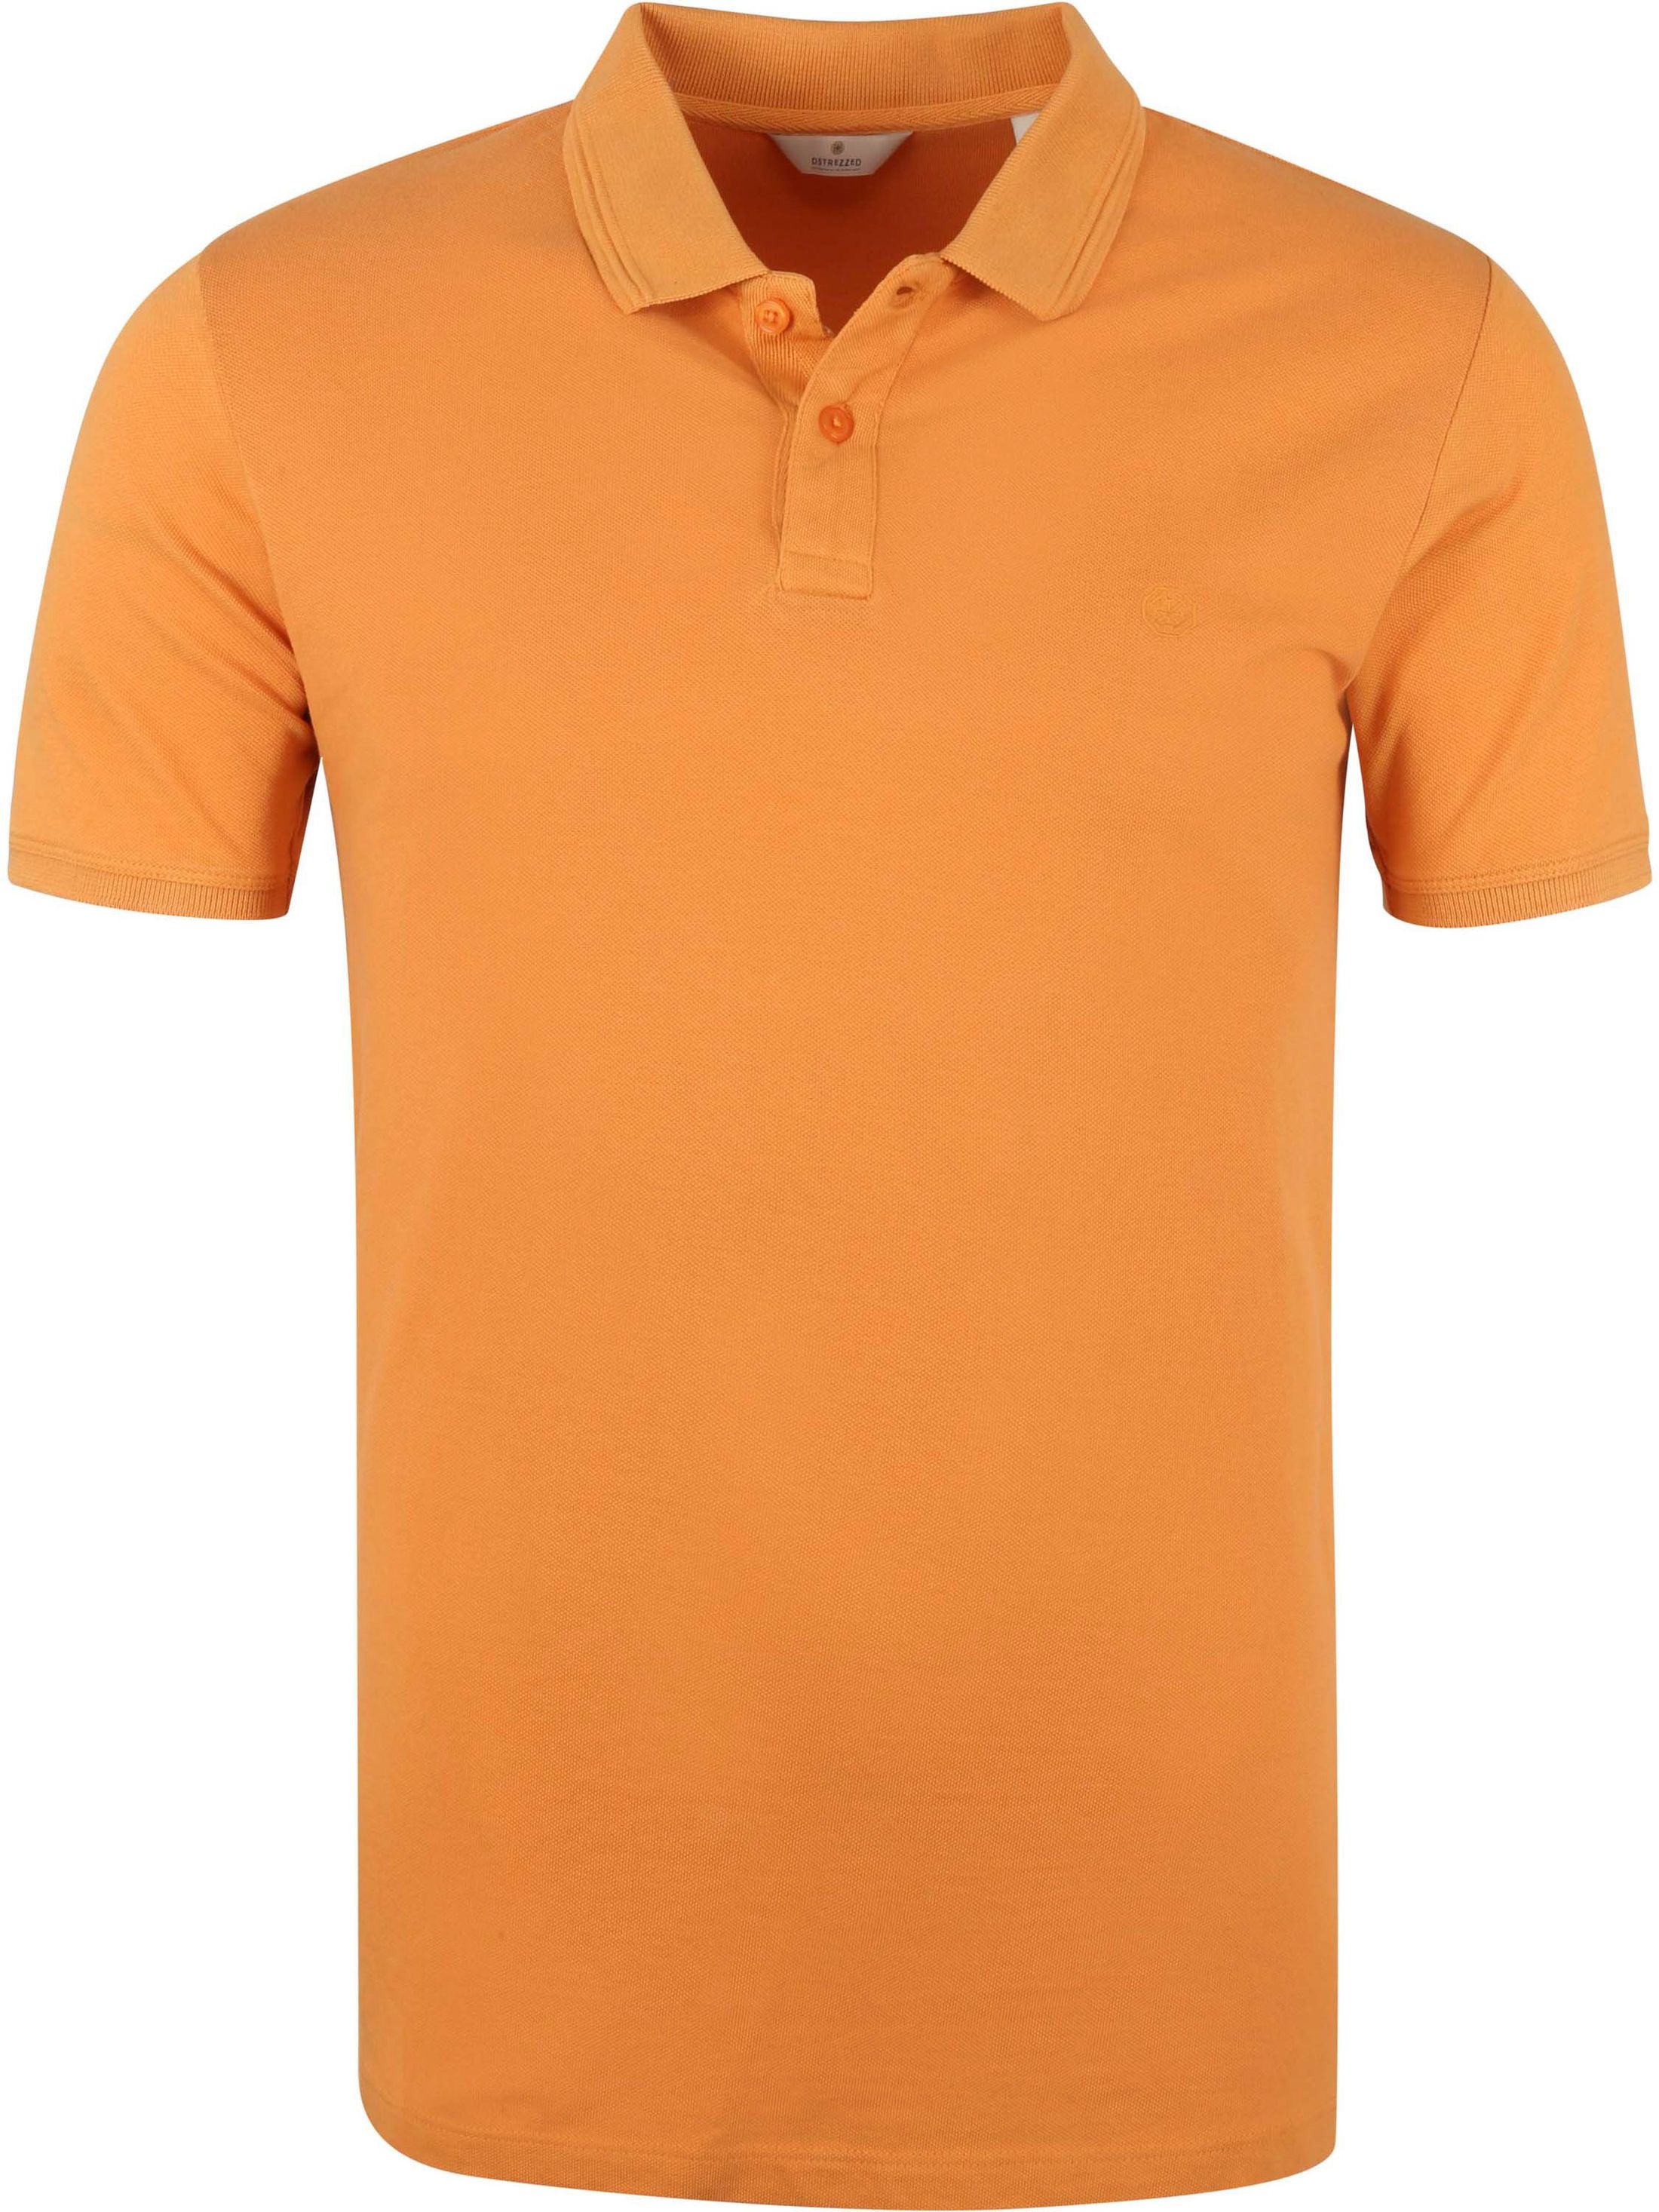 Dstrezzed Pique Polo Shirt Bowie Orange size L